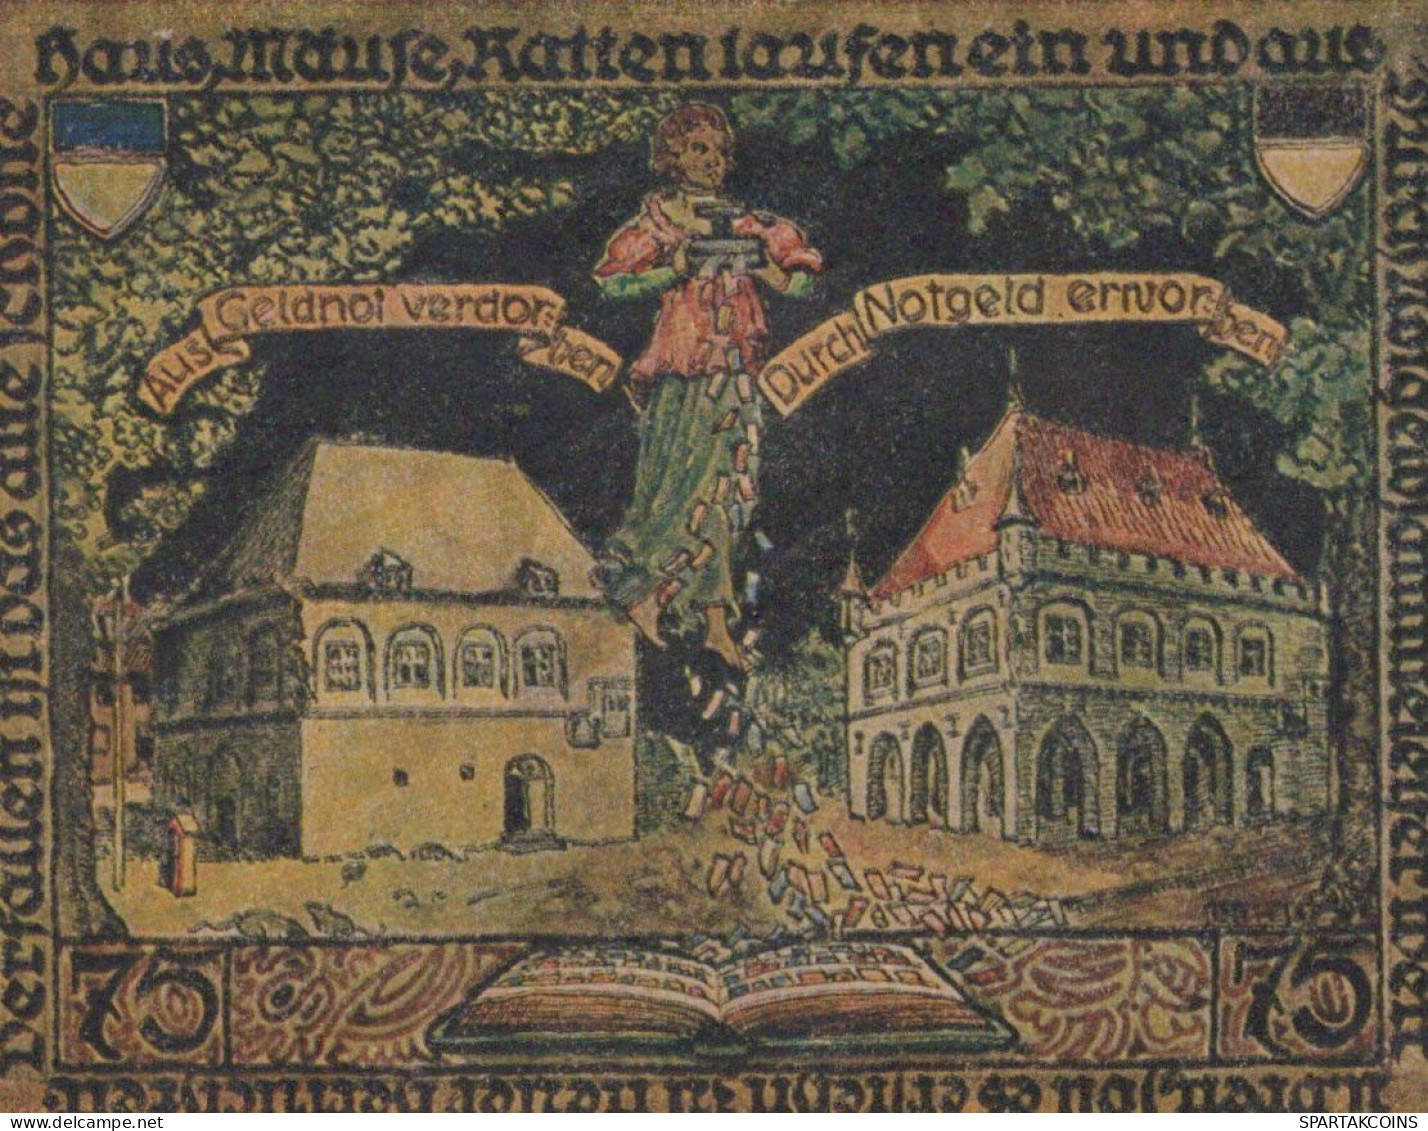 75 PFENNIG 1921 Stadt ERKELENZ Rhine UNC DEUTSCHLAND Notgeld Banknote #PB333 - [11] Emissioni Locali